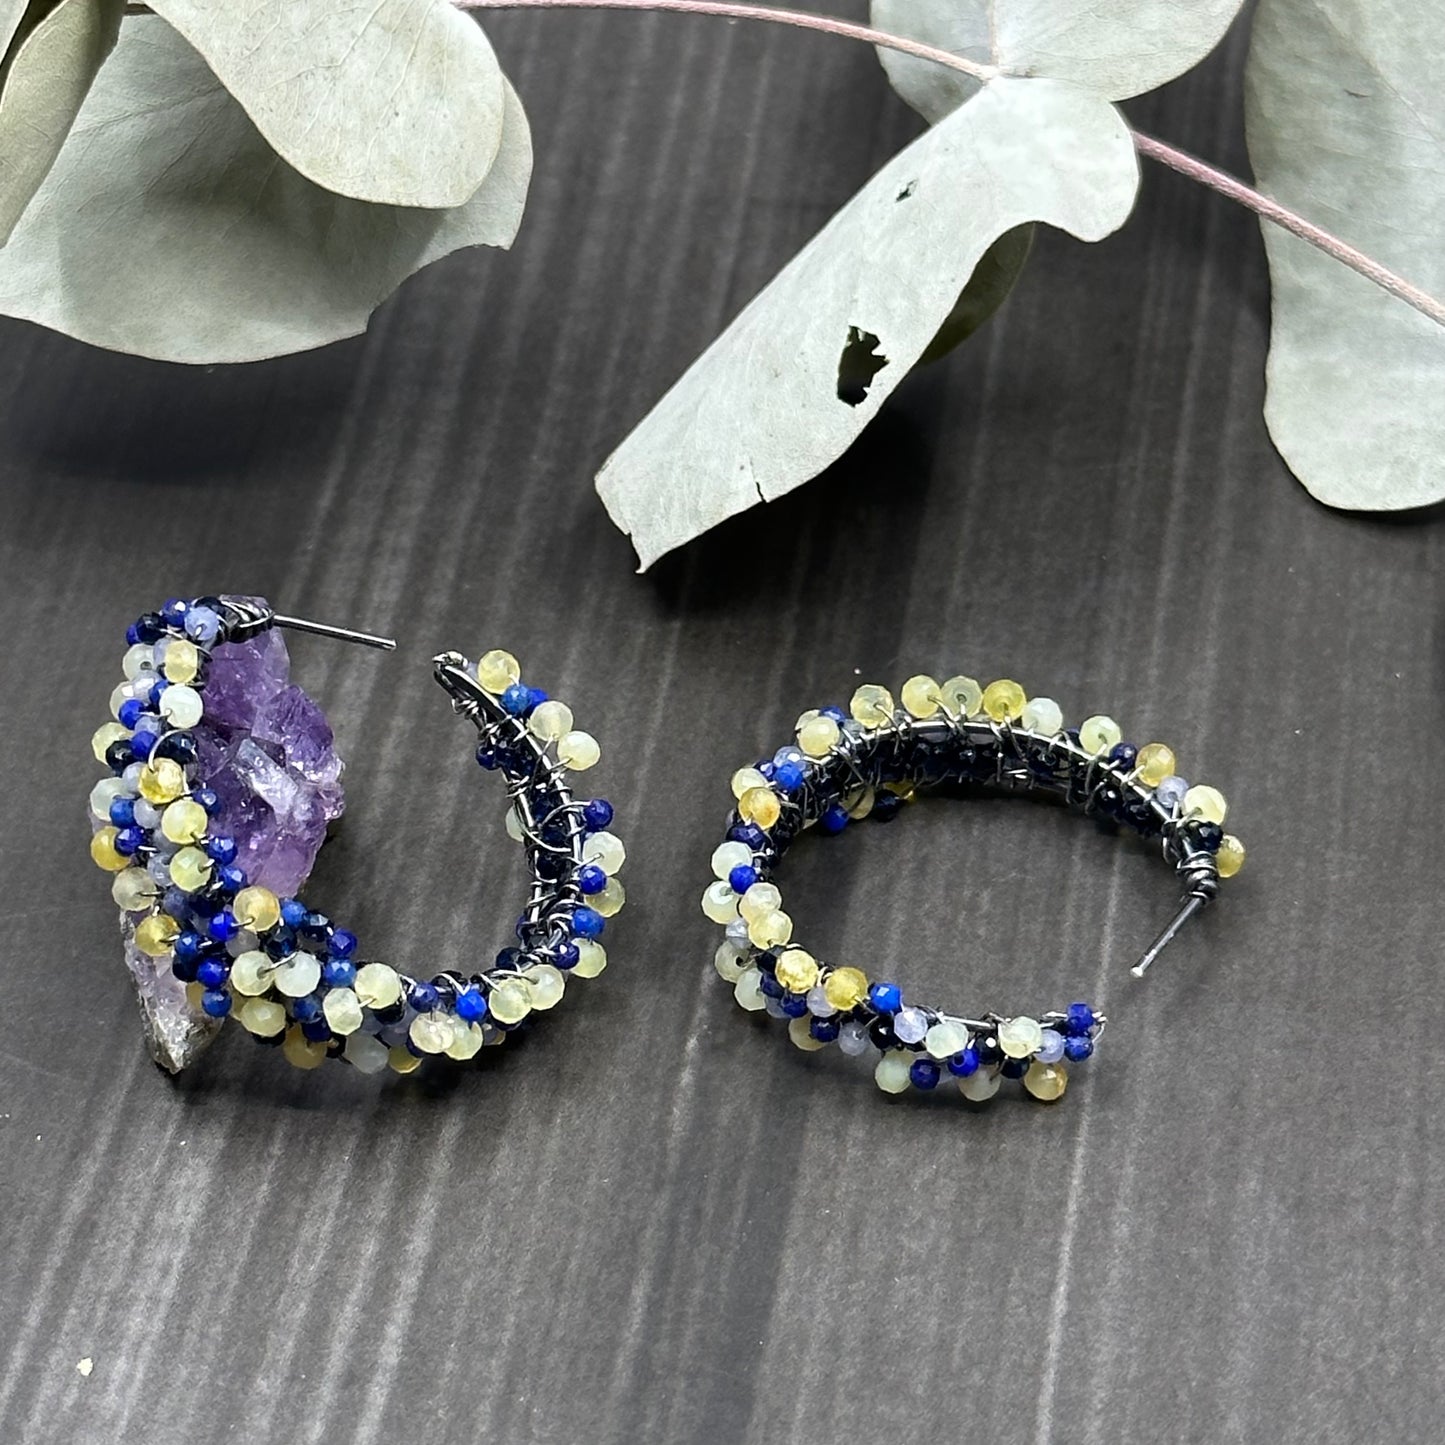 Starry Night Inspired Earrings